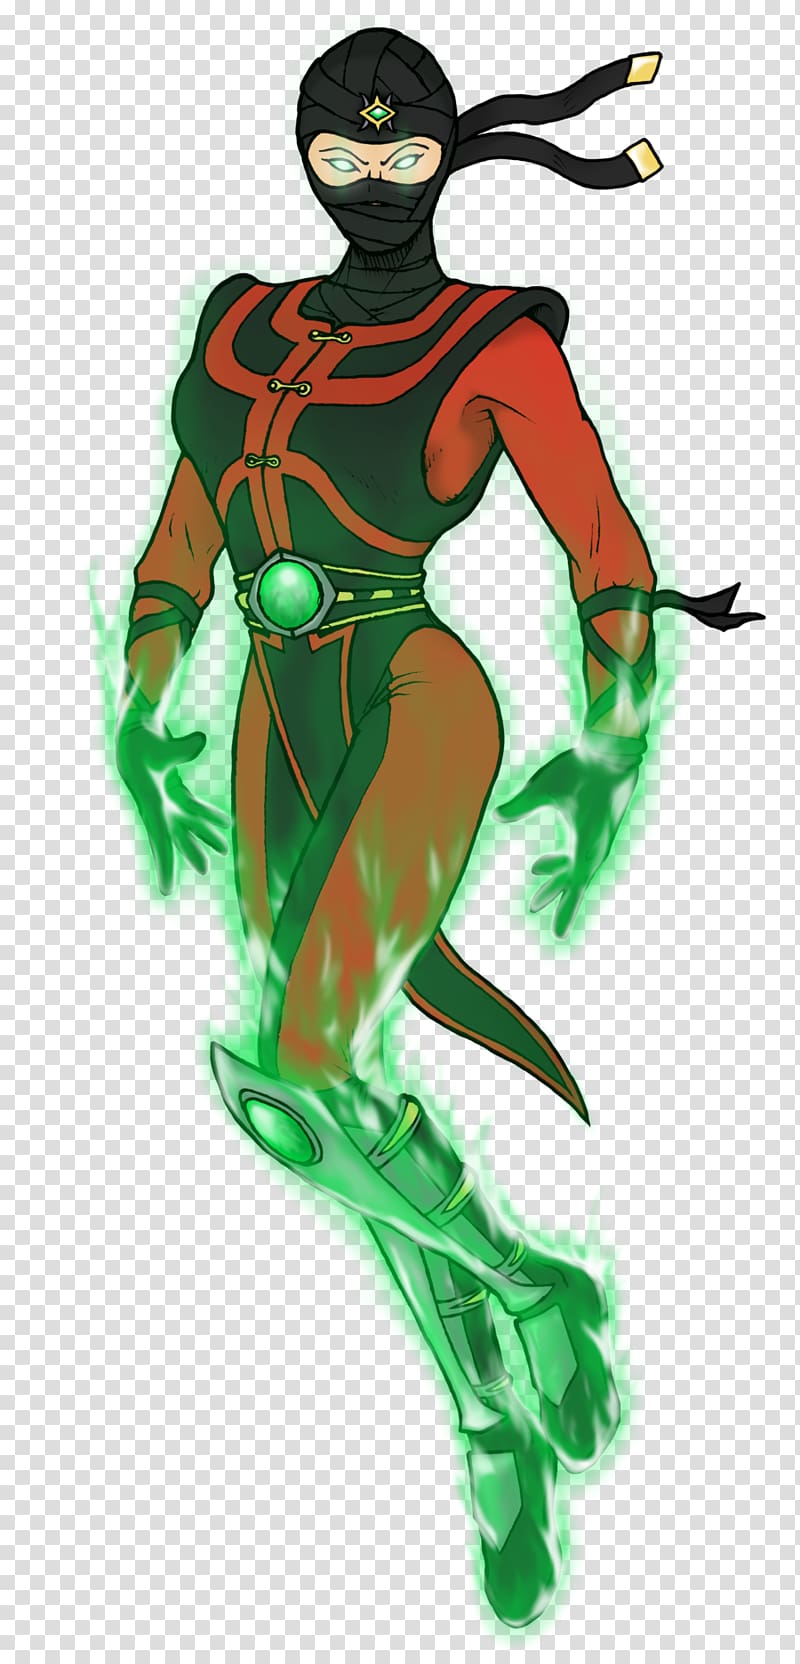 Ermac Mortal Kombat Gender bender Jade, gender switch transparent background PNG clipart